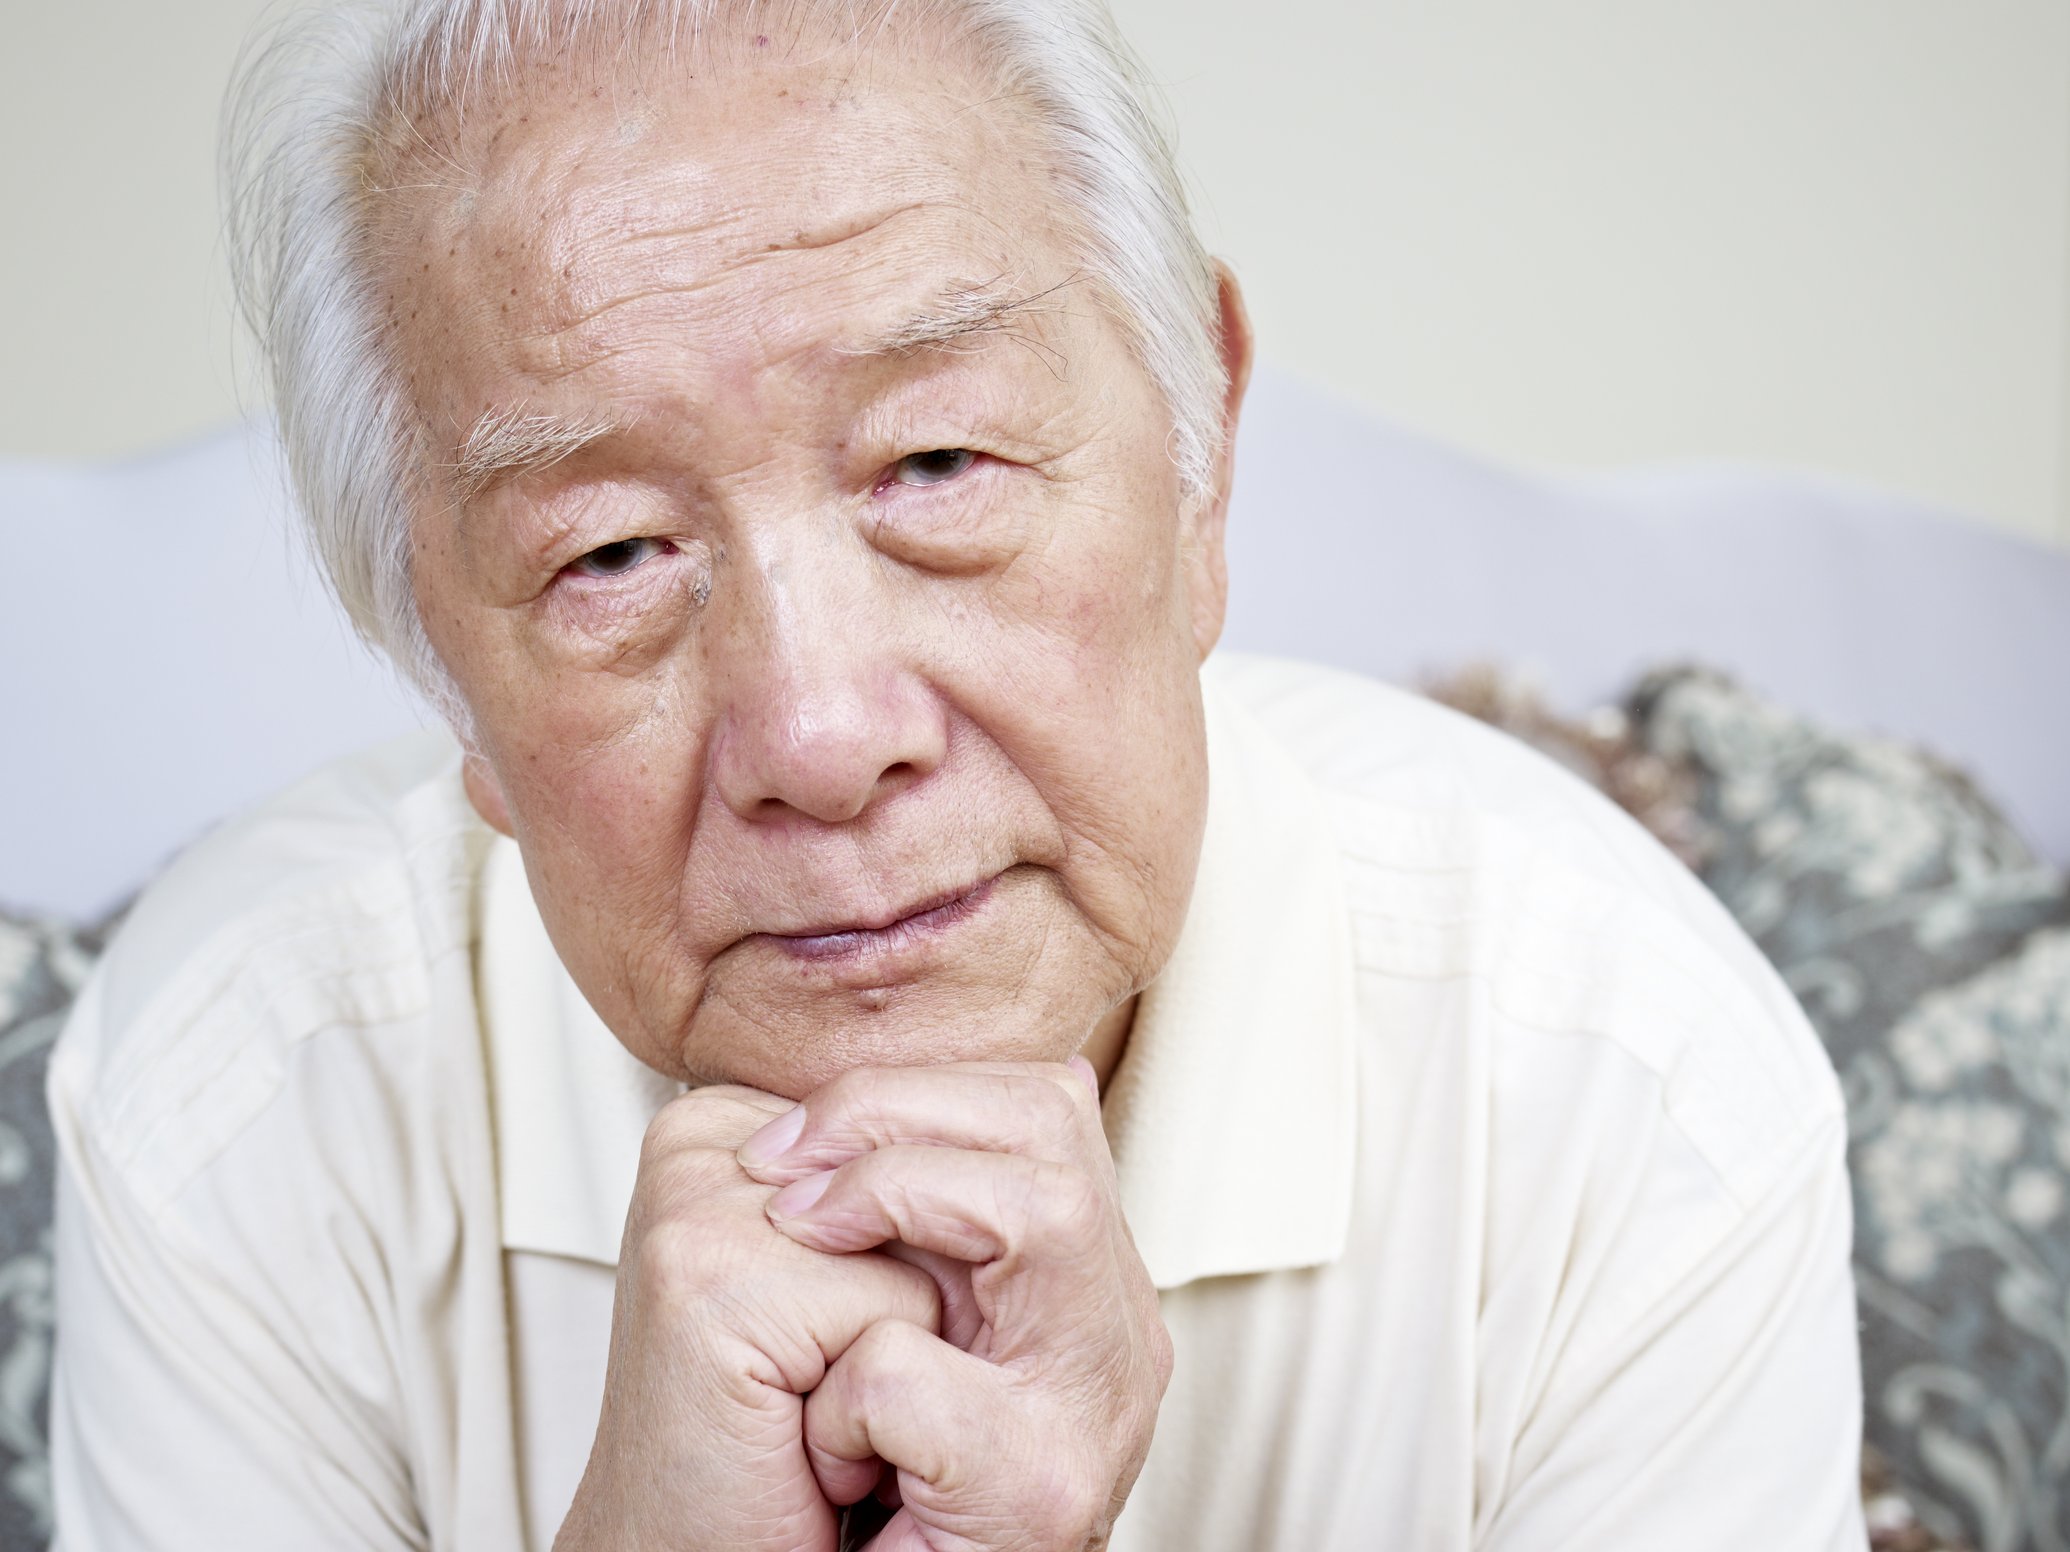 Пожилые азиаты. Пожилой Азиат. Пожилой Азиат протирает глаза. Old Asia man portrait. Портреты в кастюма азиата пожилого.